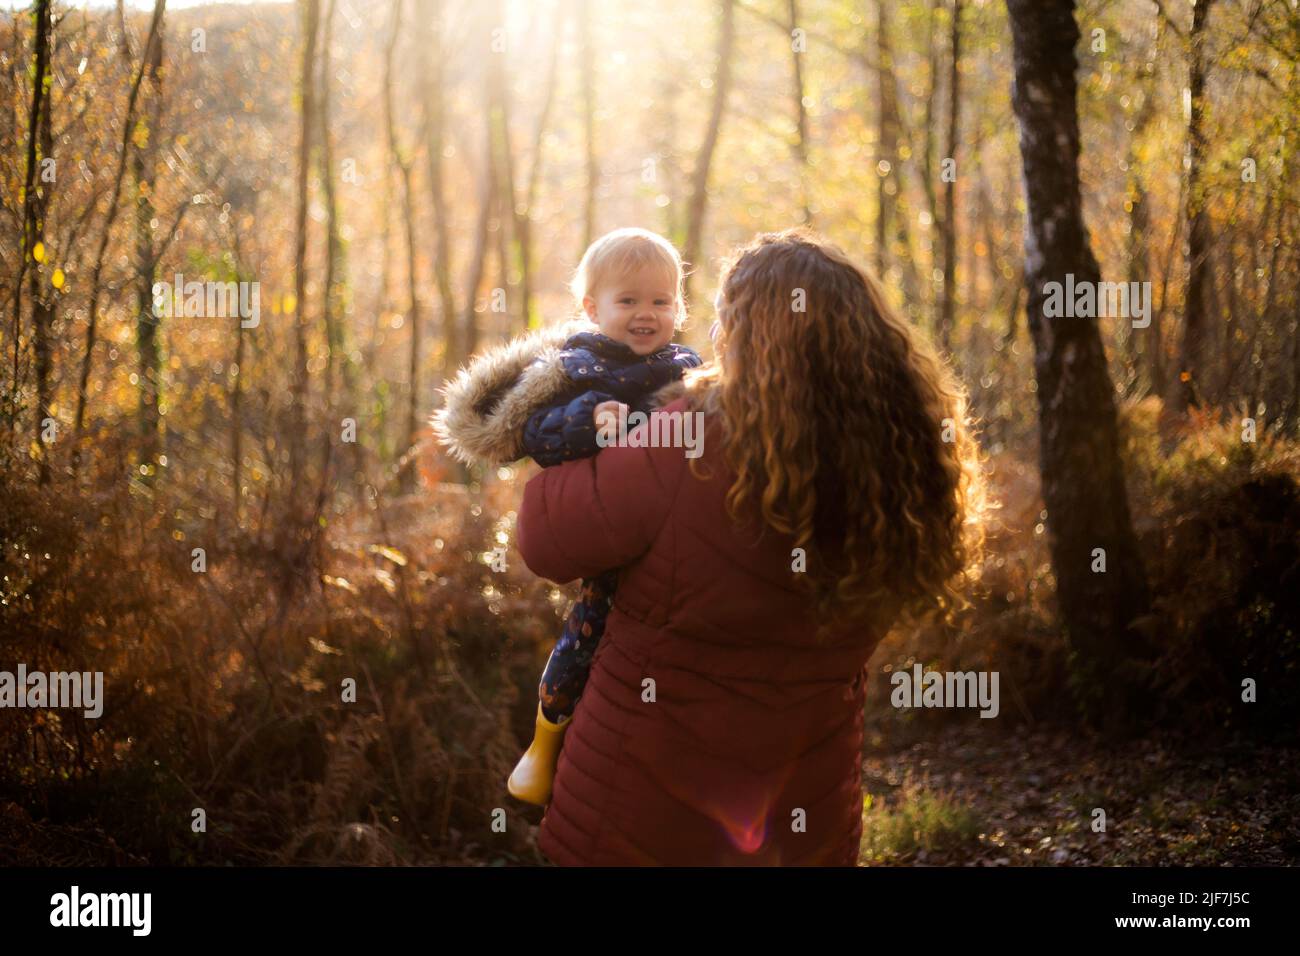 une femme aux cheveux rouges de curley tenant un bébé souriant dans une forêt Banque D'Images